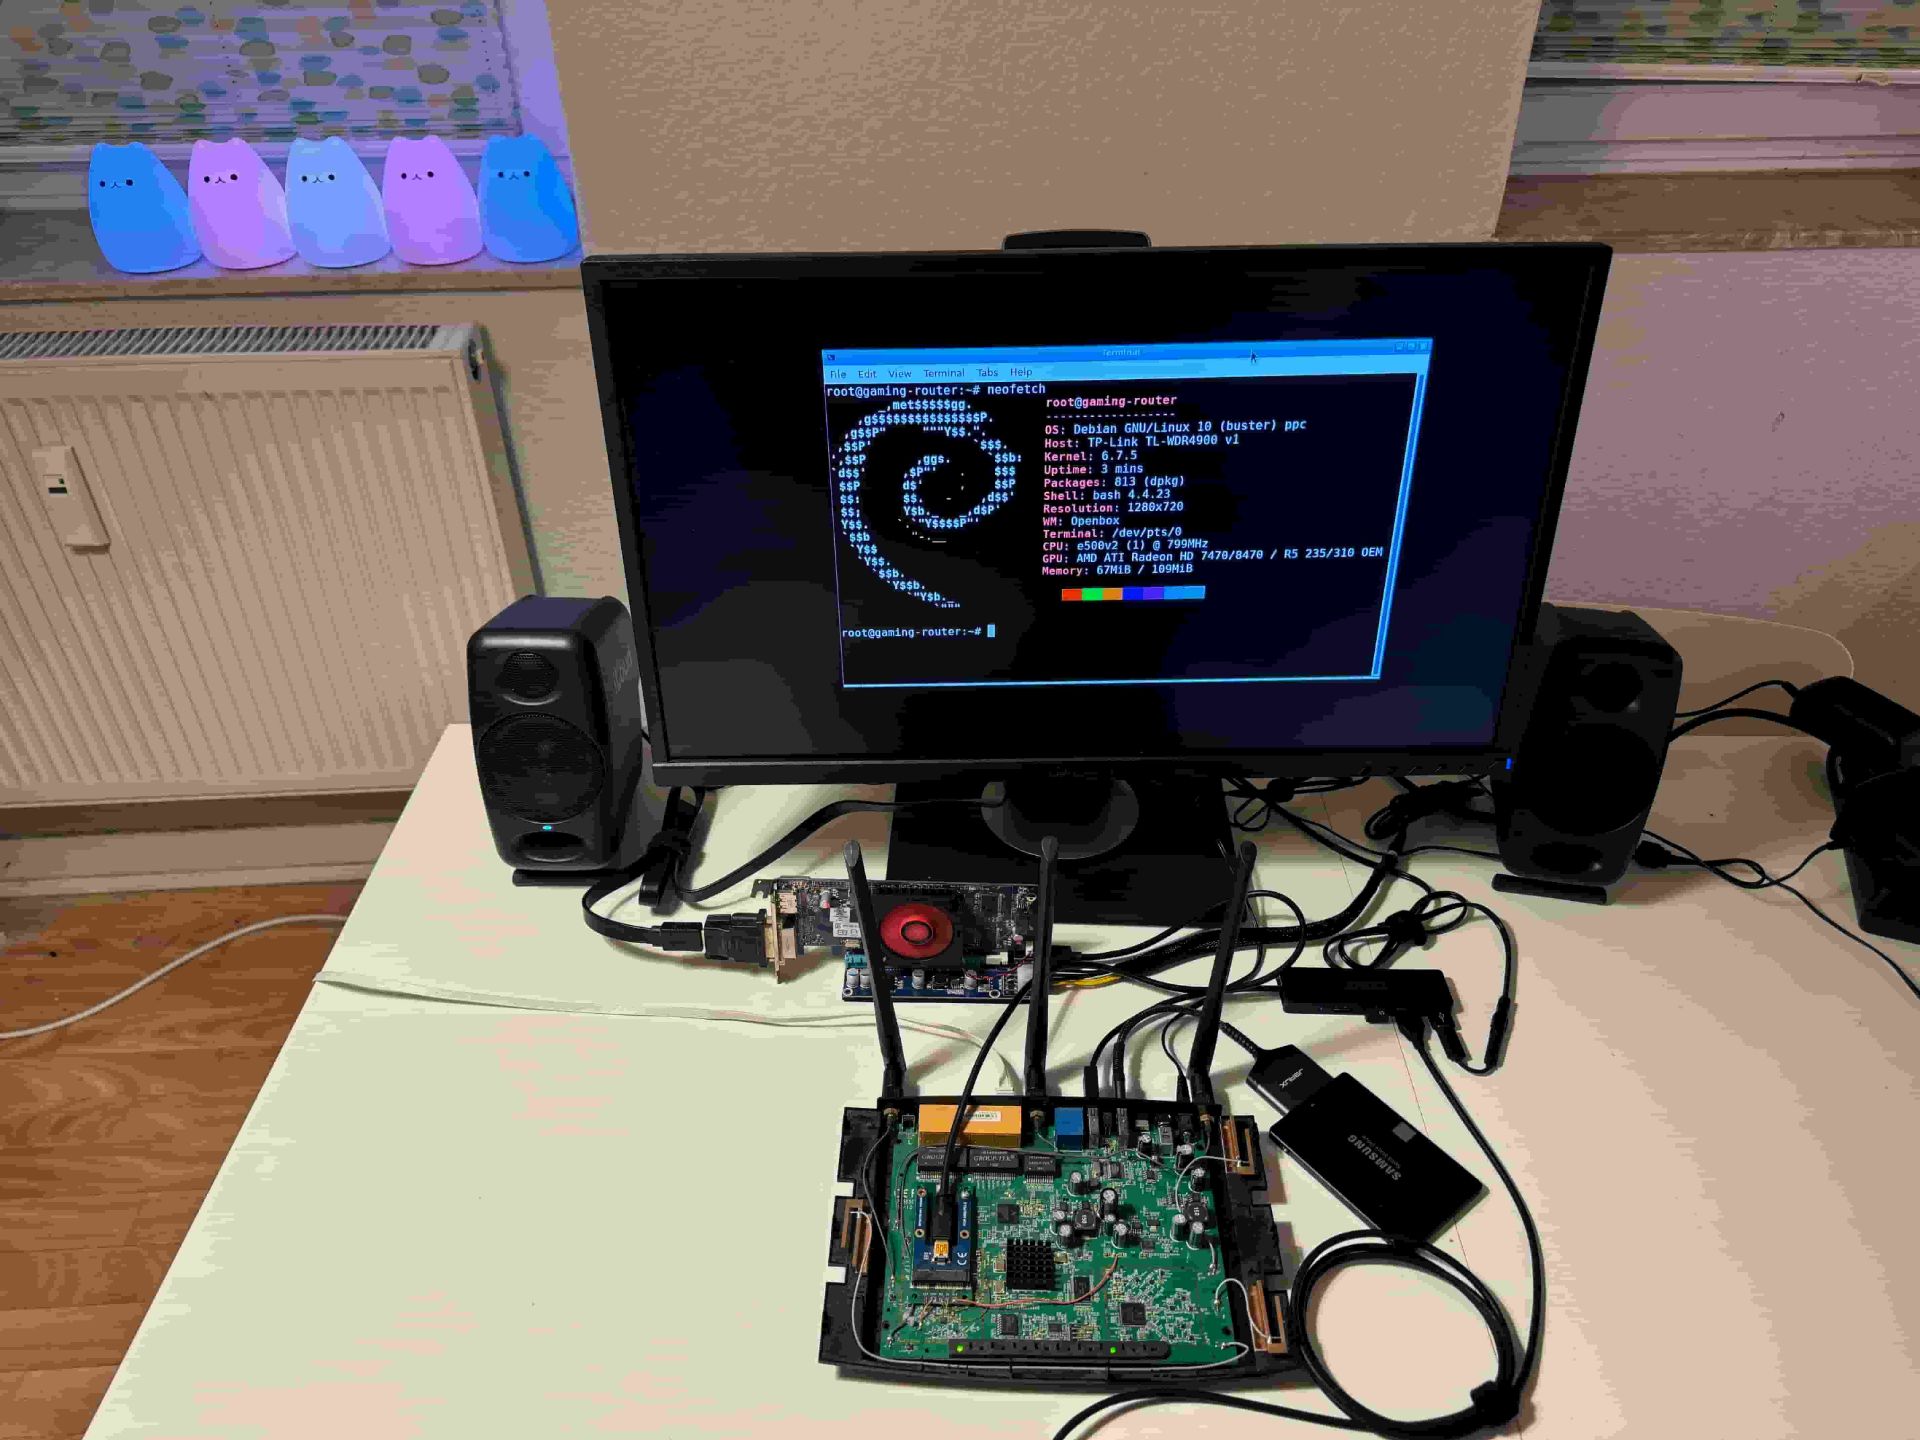 اجرای GTA Vice City روی روتر تی‌پی‌لینک - روتر باز شده روی میز به همراه دیگر قطعات متصل شده به آن مثل کارت گرافیک و SSD و مانیتور